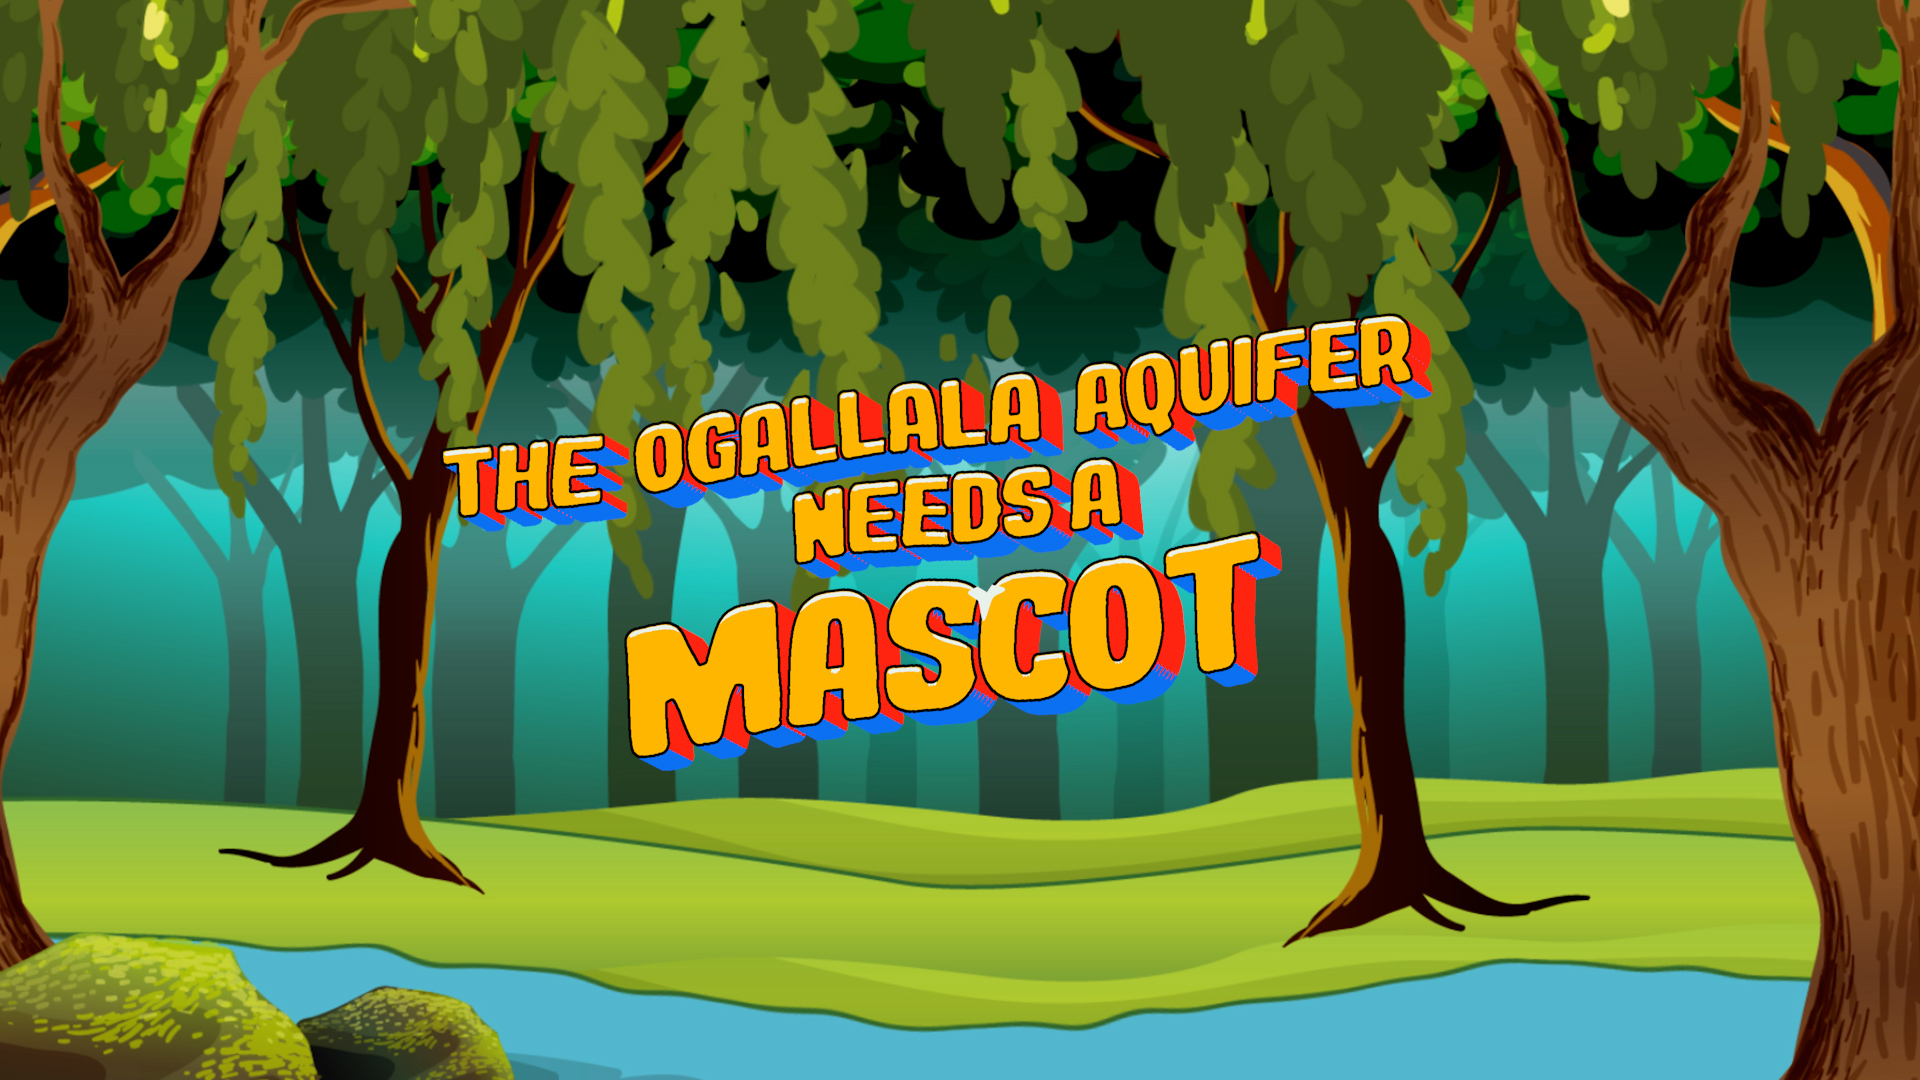 The Ogallala aquifer needs a mascot